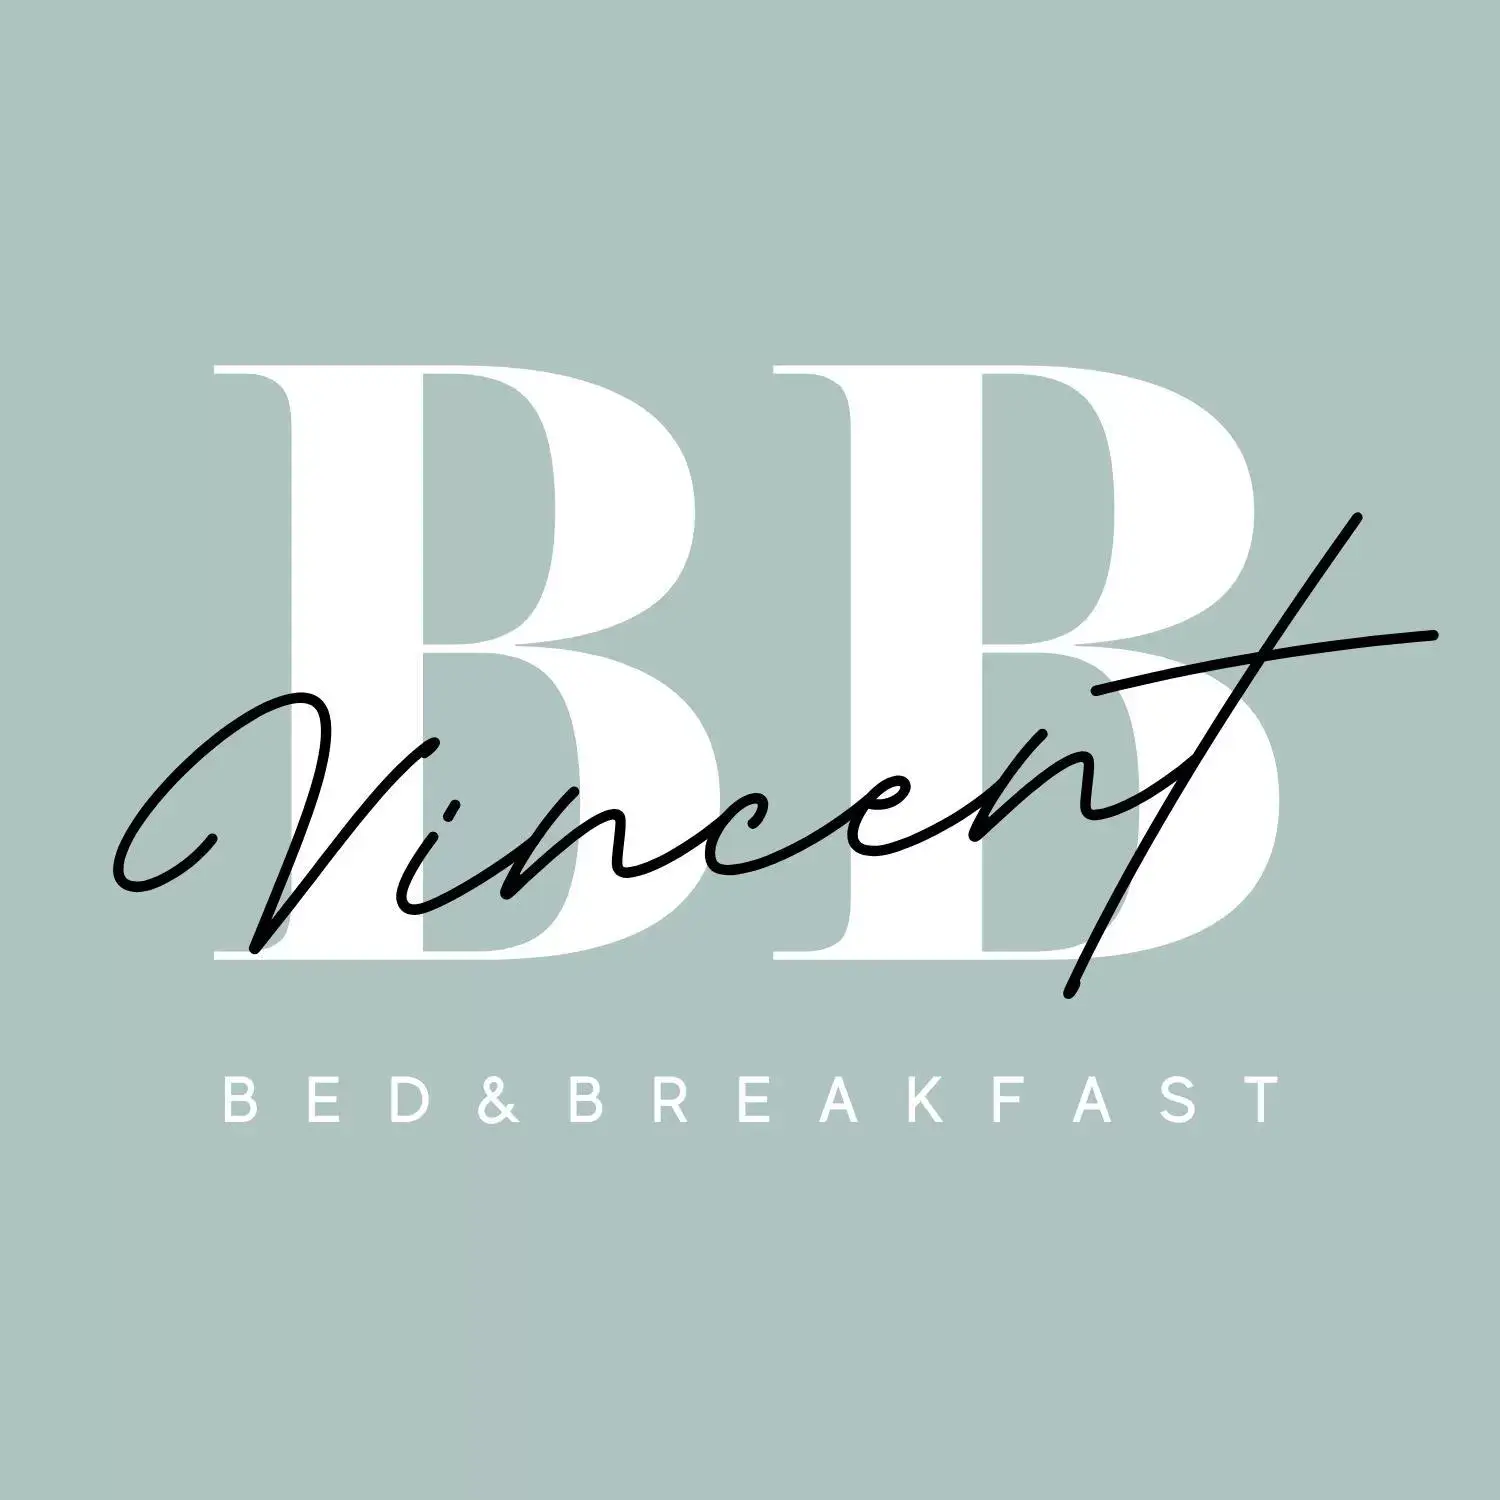 Property logo or sign, Property Logo/Sign in B&B bij Vincent